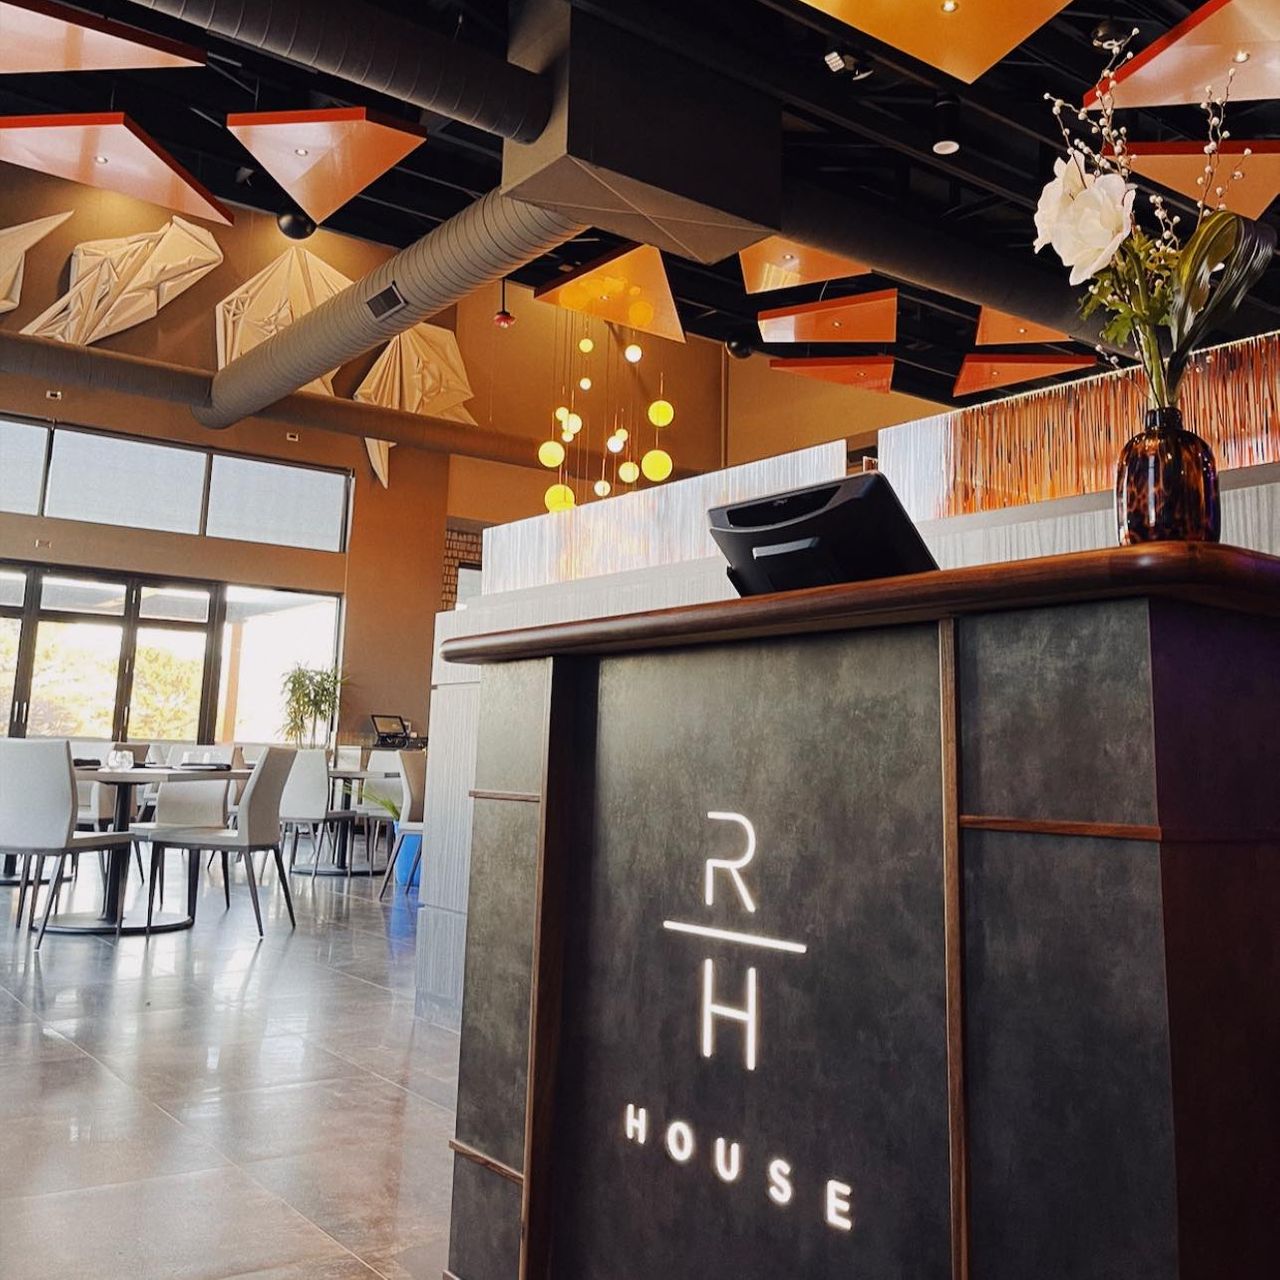 RH House Restaurant - Rochester Hills, MI